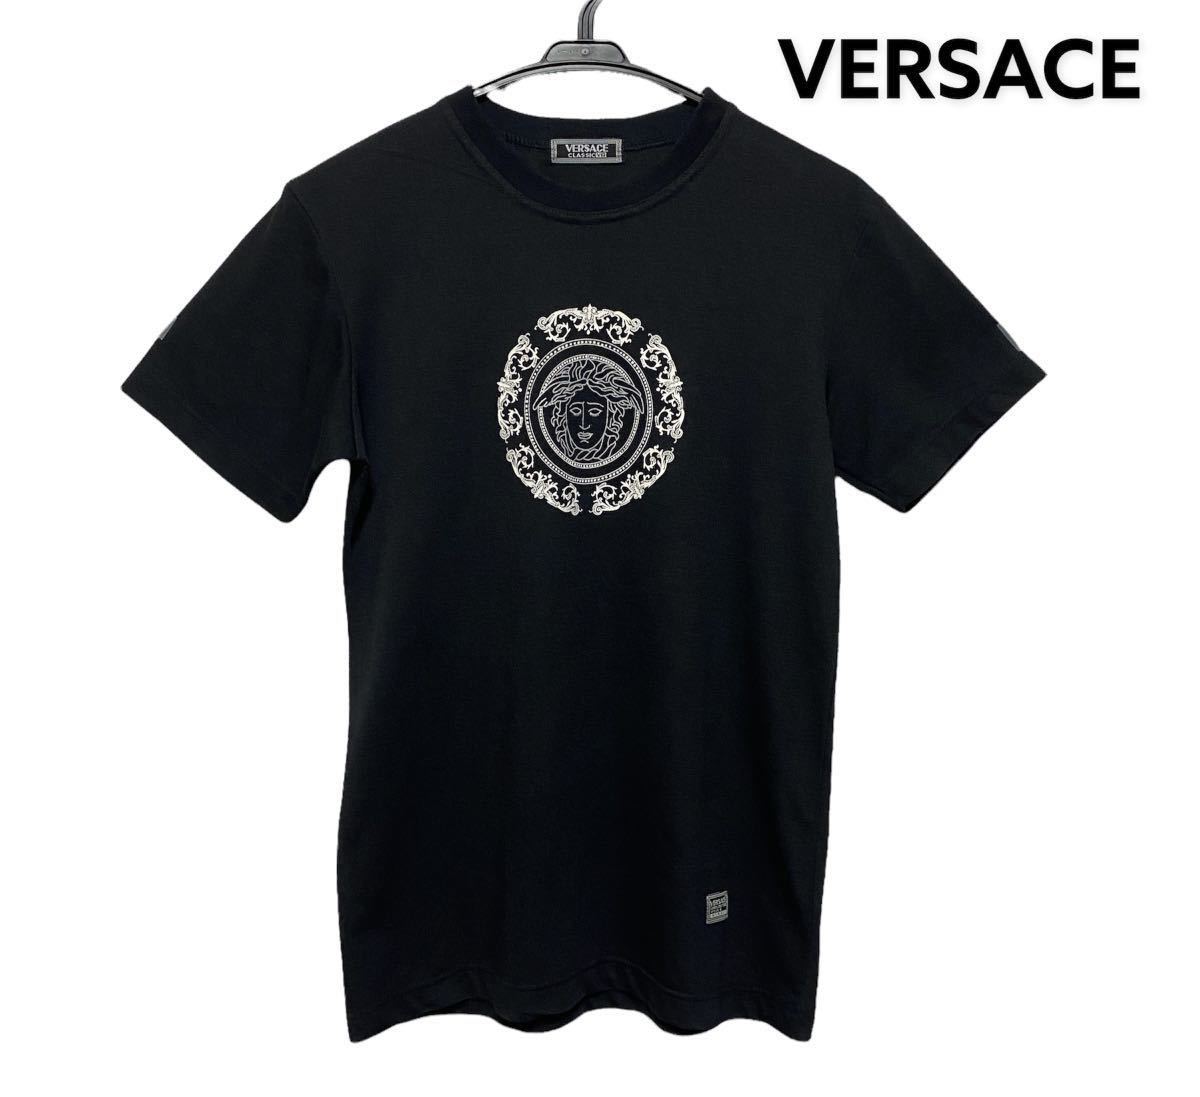 ○ヴェルサーチ クラシックV2 VERSACE CLASSIC V2/半袖Tシャツ 